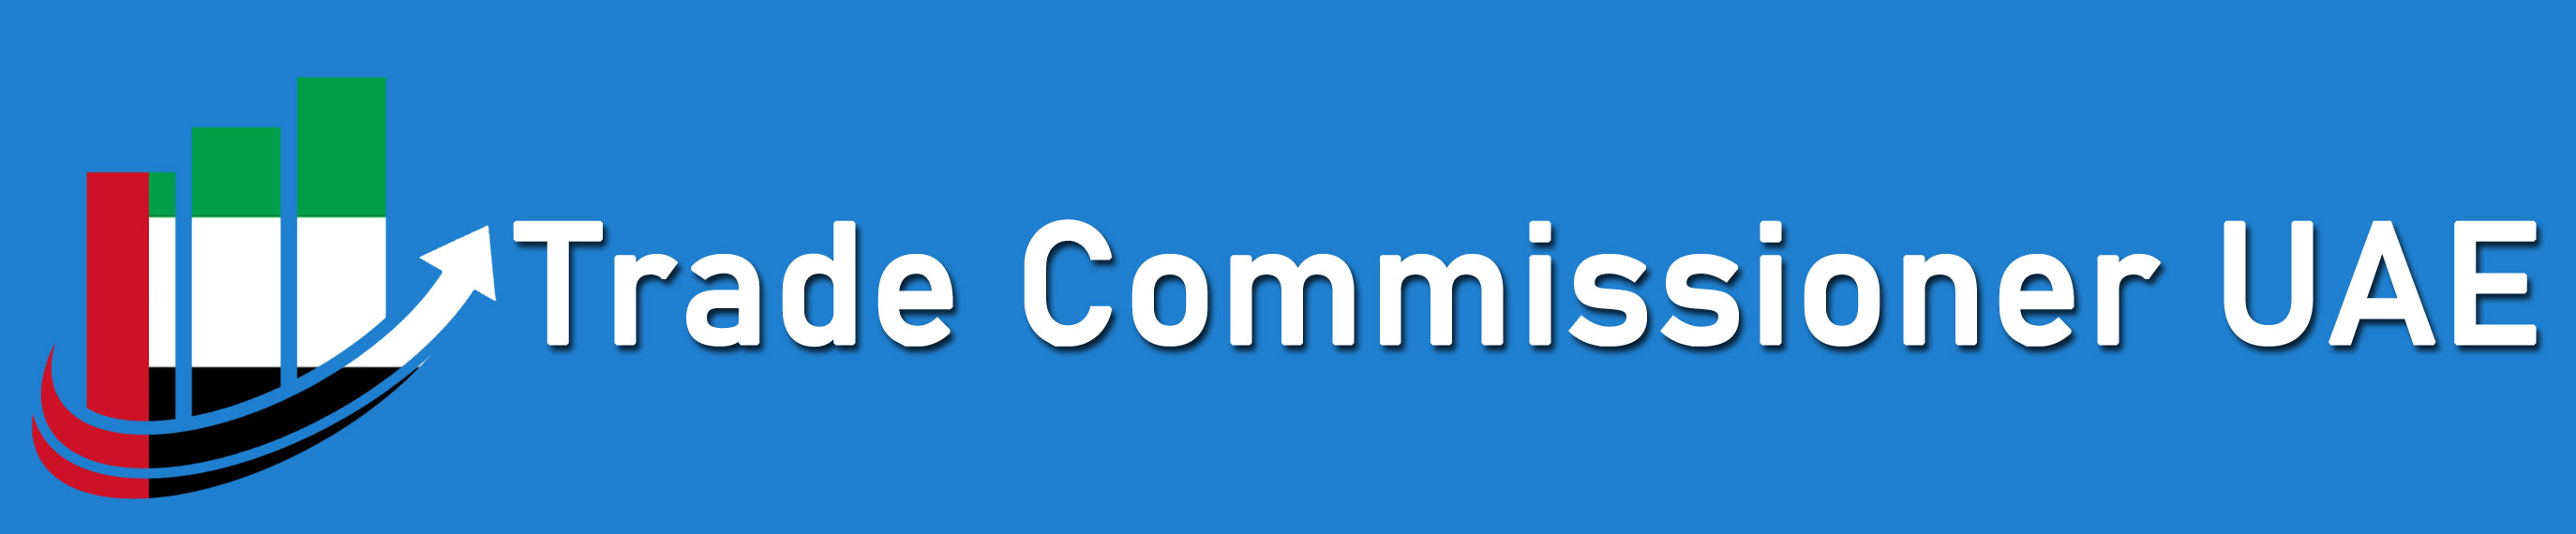 Trade Commissioner UAE logo